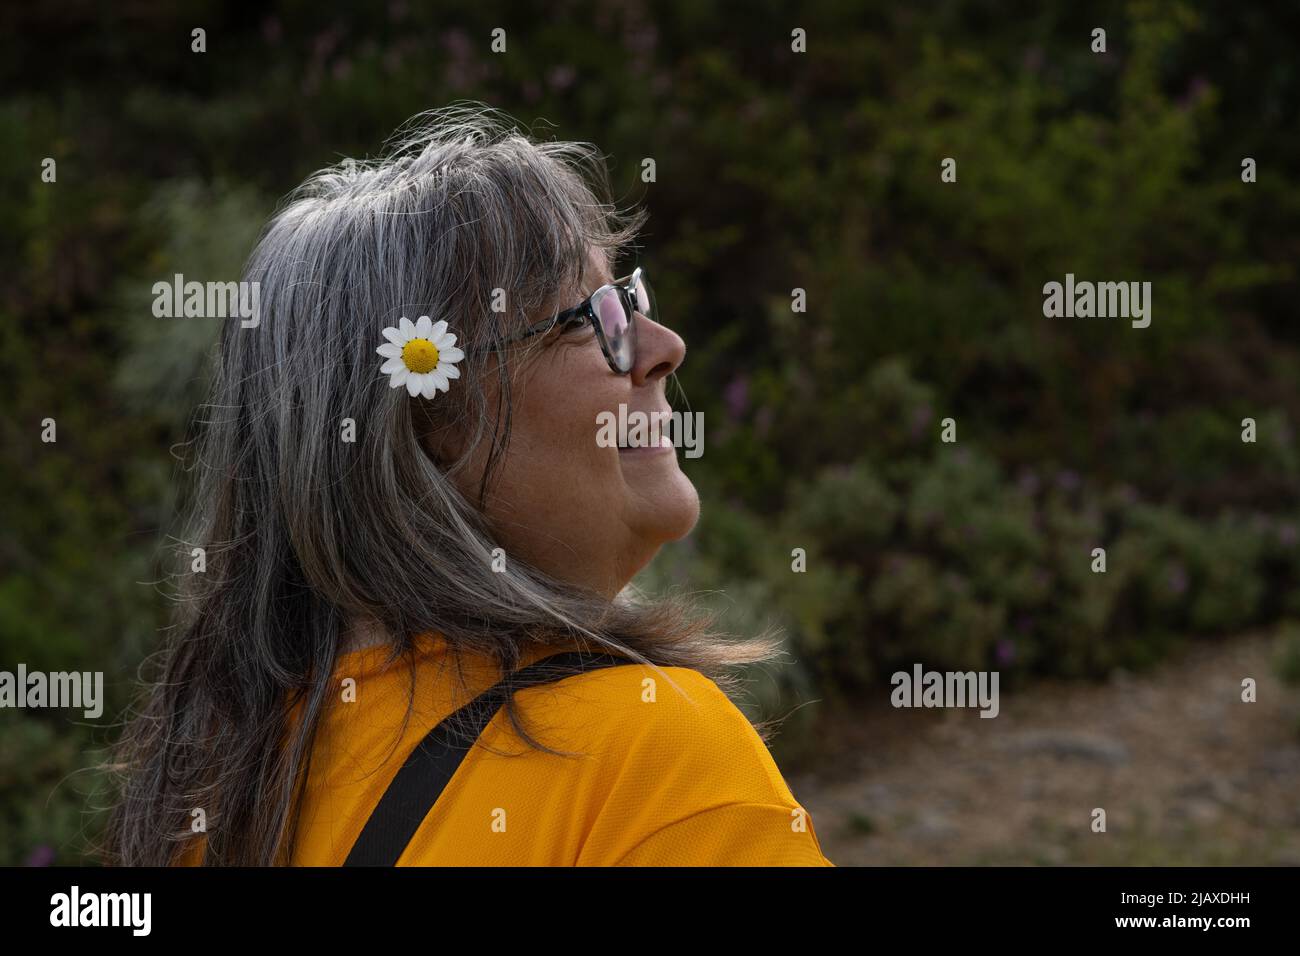 femme aux cheveux blancs portant des lunettes avec une marguerite dans ses cheveux Banque D'Images